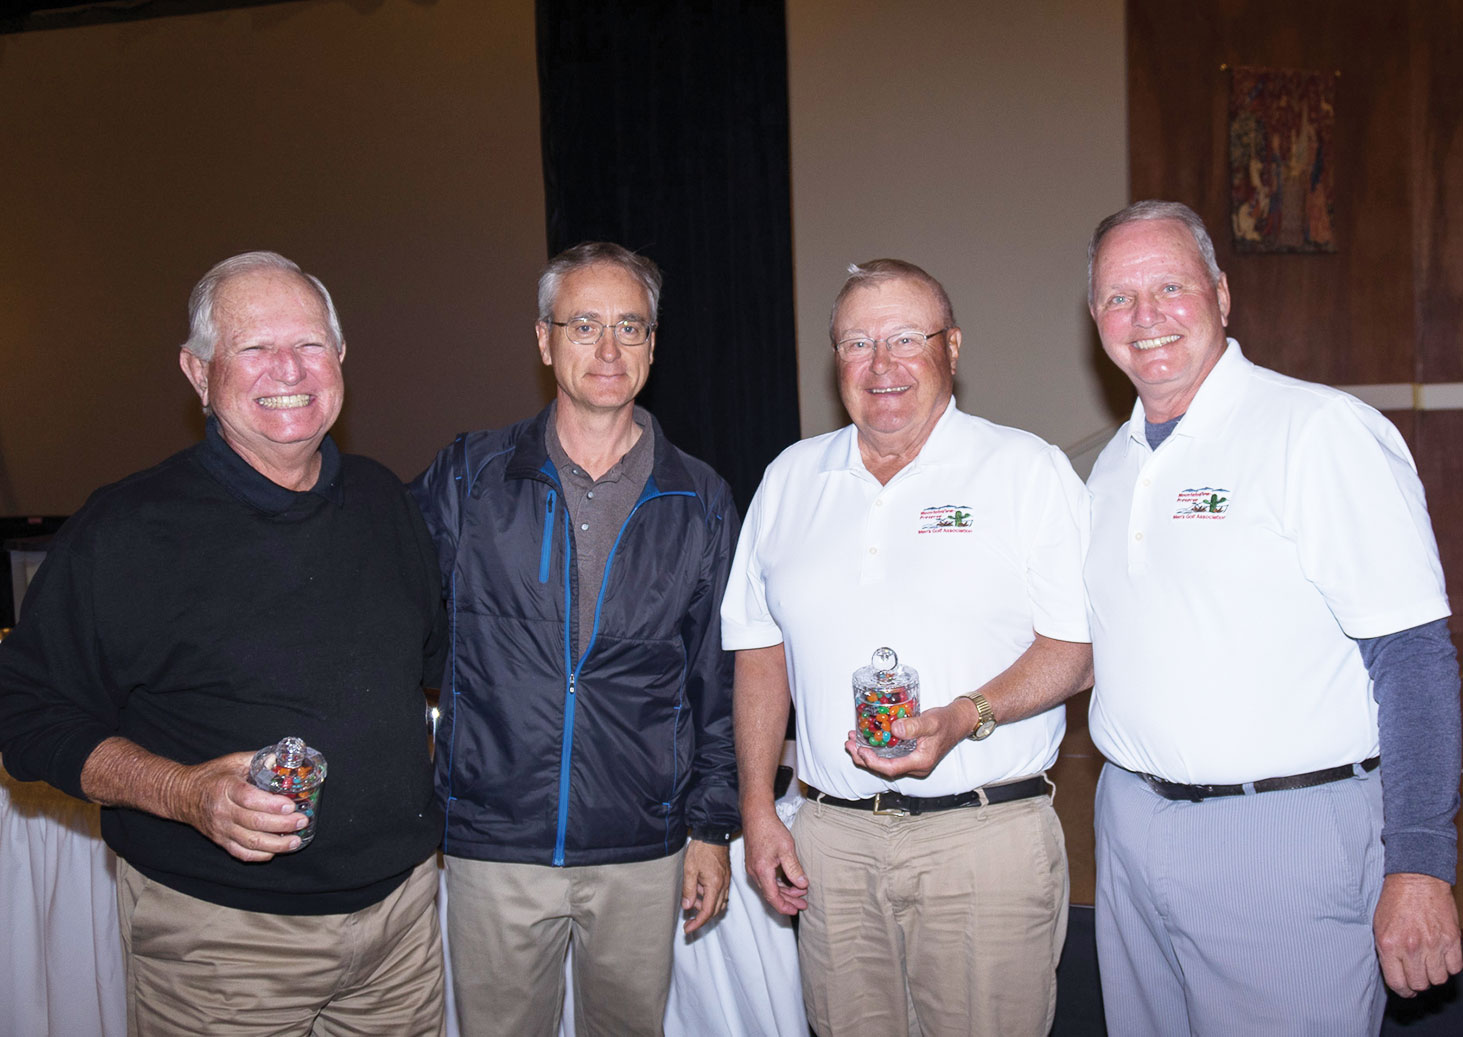 Left to right: Steve Bender, Mike Jahaske, Mark Connell and Bob Eder